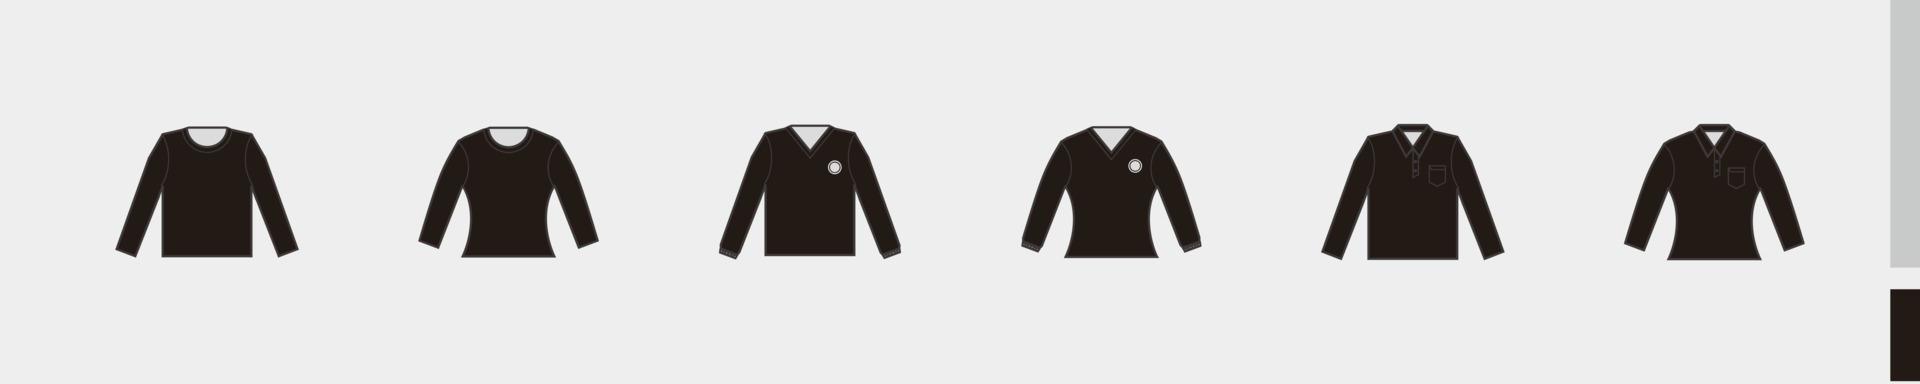 långärmad svart skjorta, t-shirt, kläder med krage med ficka för produktionskläder, reklam, kläder textil användning vektor